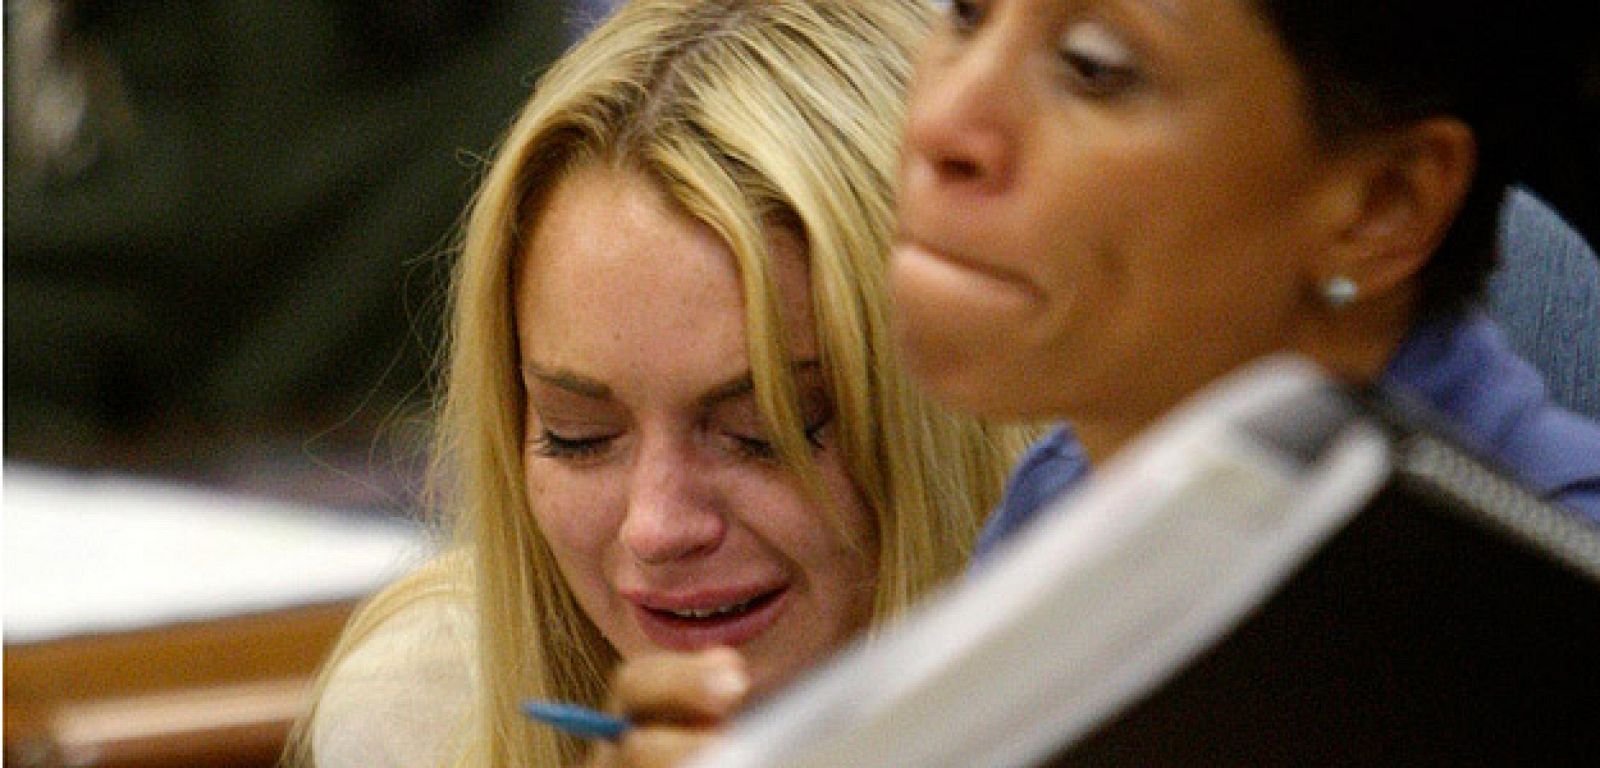 Las lágrimas de Lohan recorren sus rostro mientras escucha la sentencia.